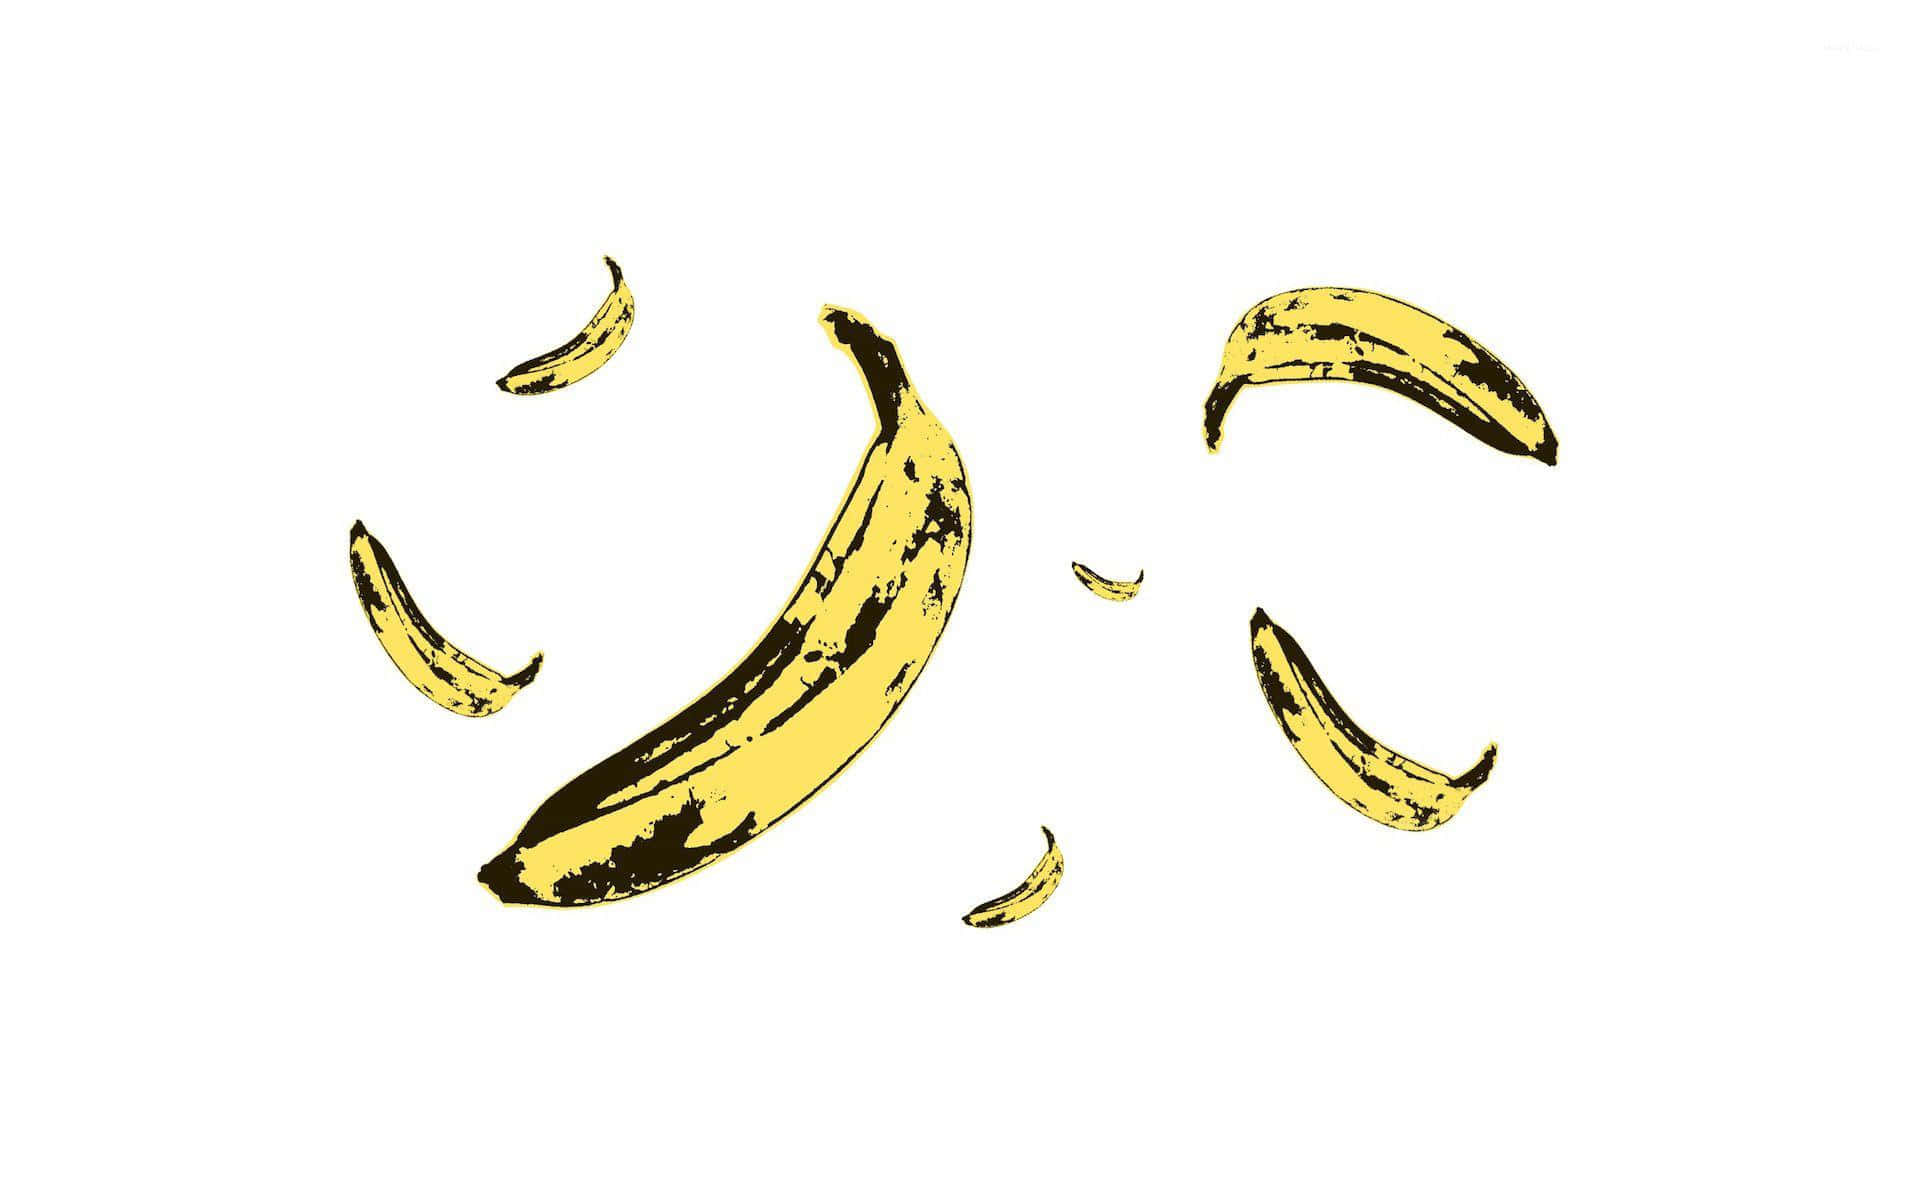 Bananenbilder